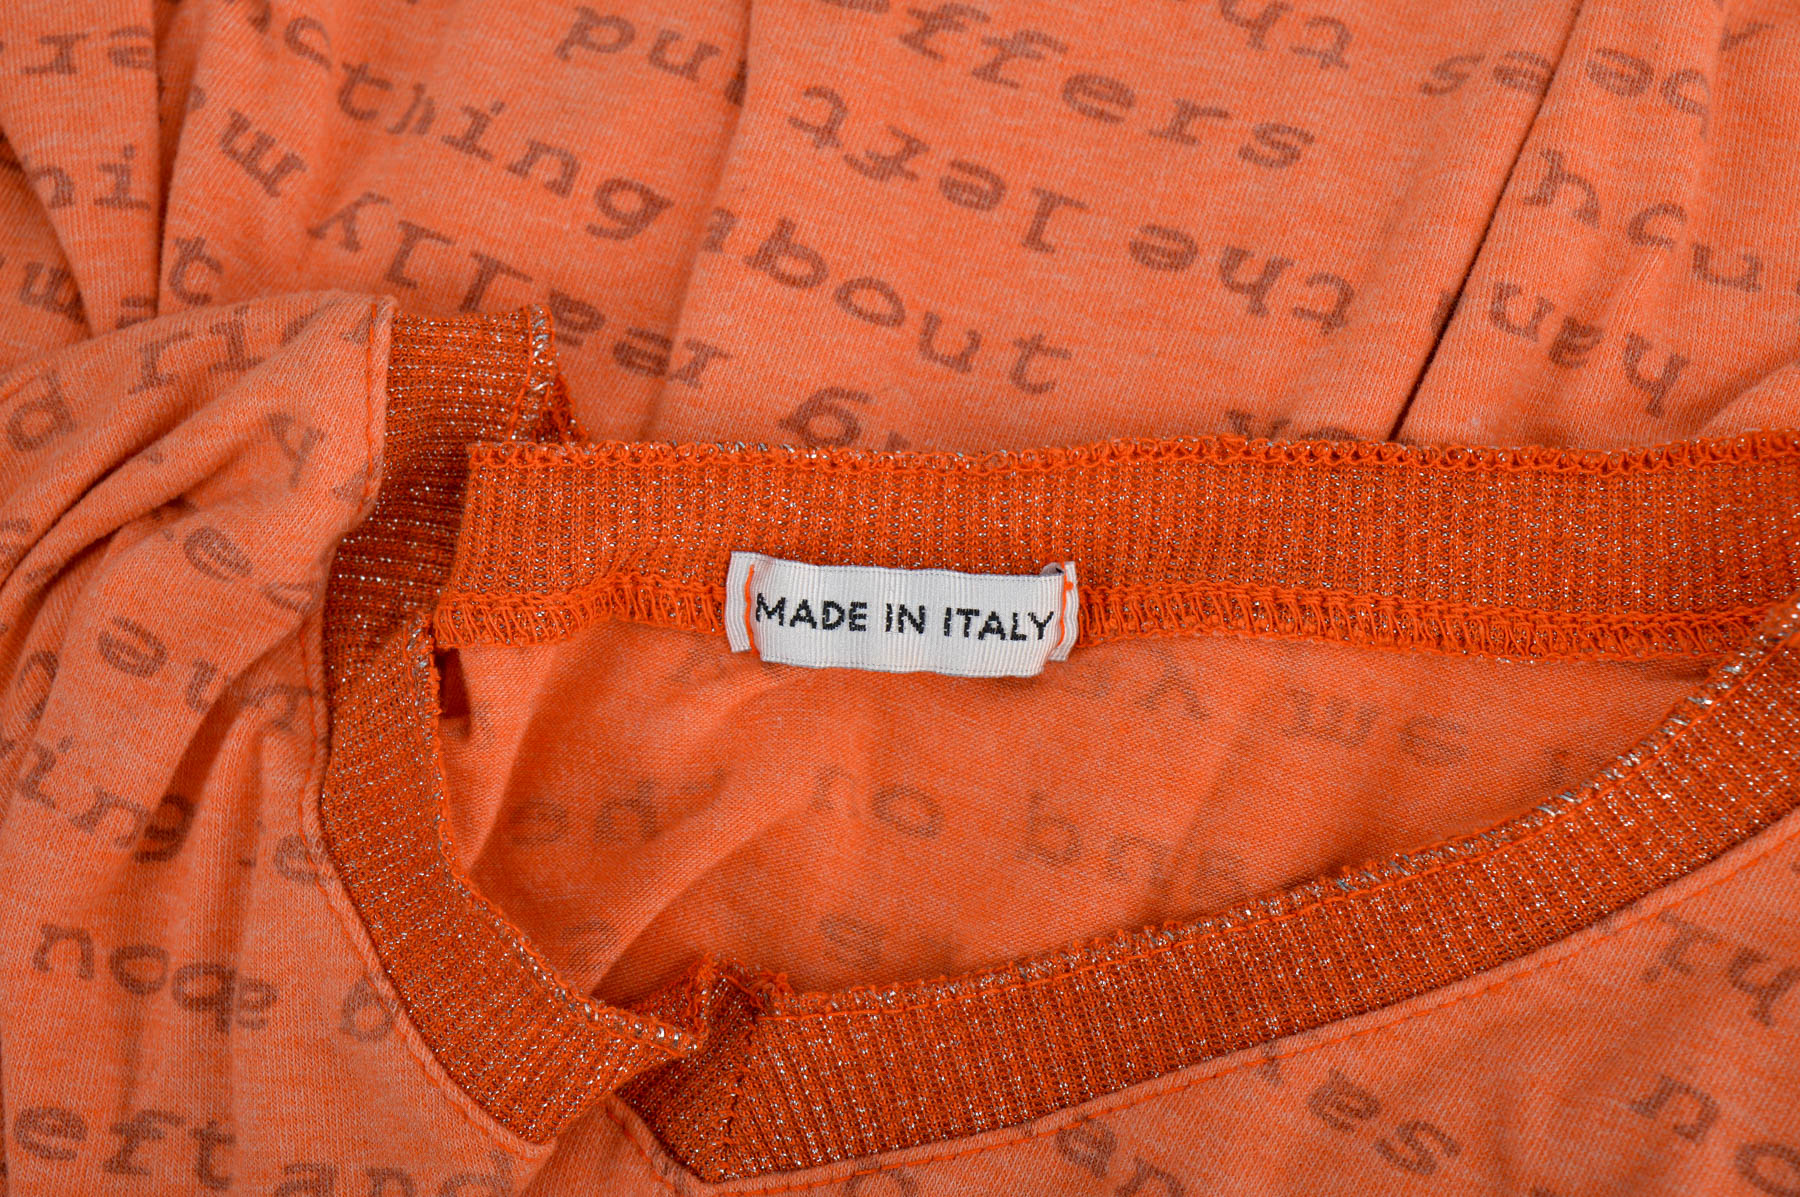 Γυναικεία μπλούζα - Made in Italy - 2